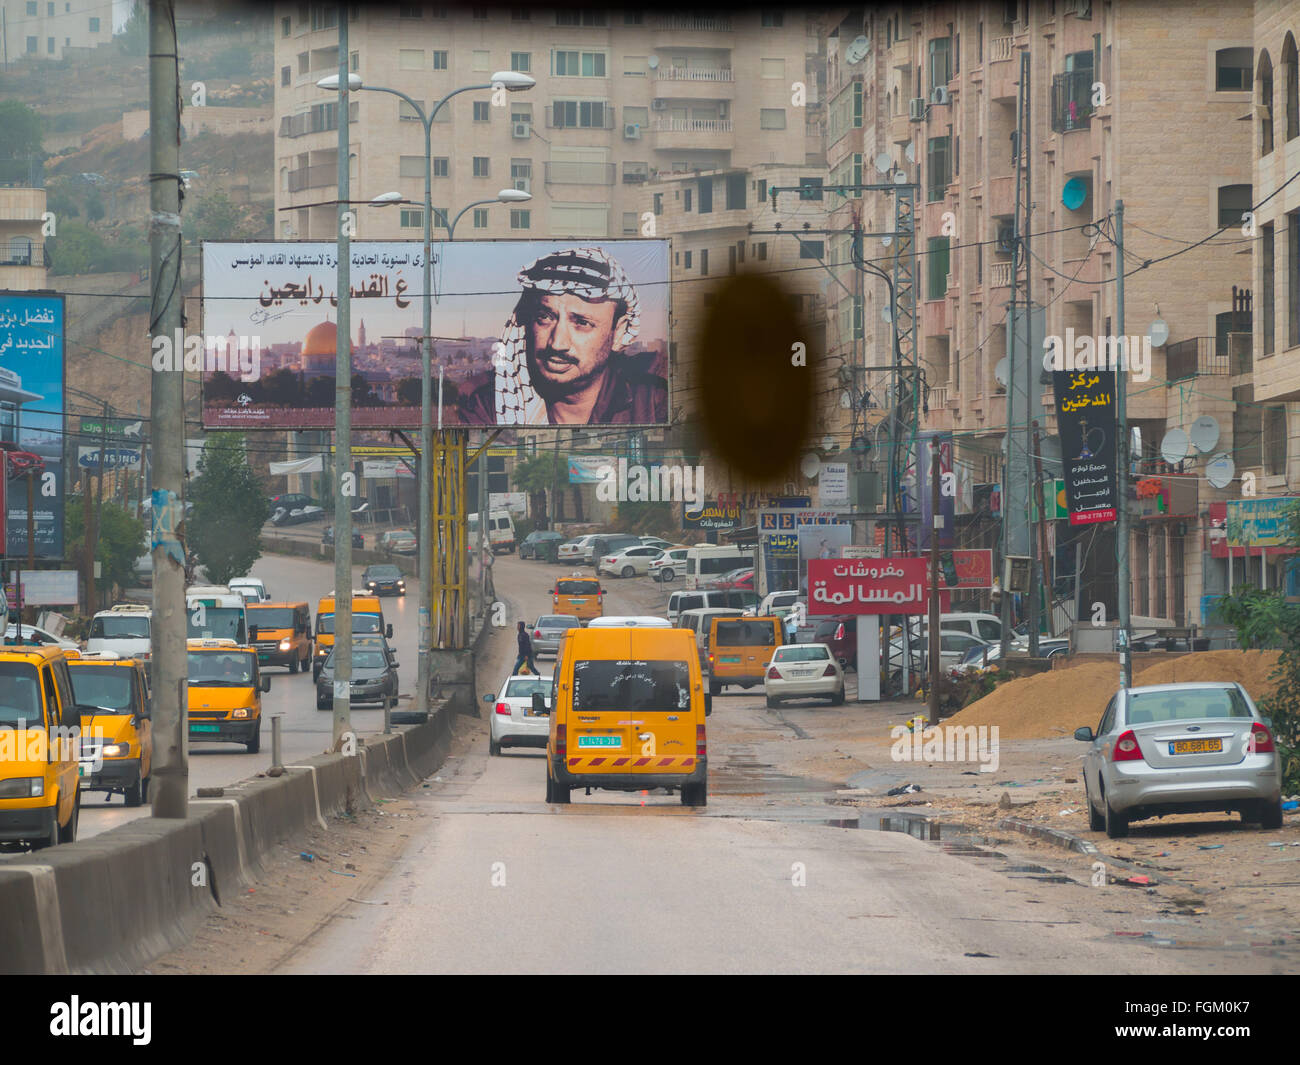 Rue de Ramallah vu de l'intérieur de la voiture avec Arafat dans l'extrême de l'affiche Banque D'Images